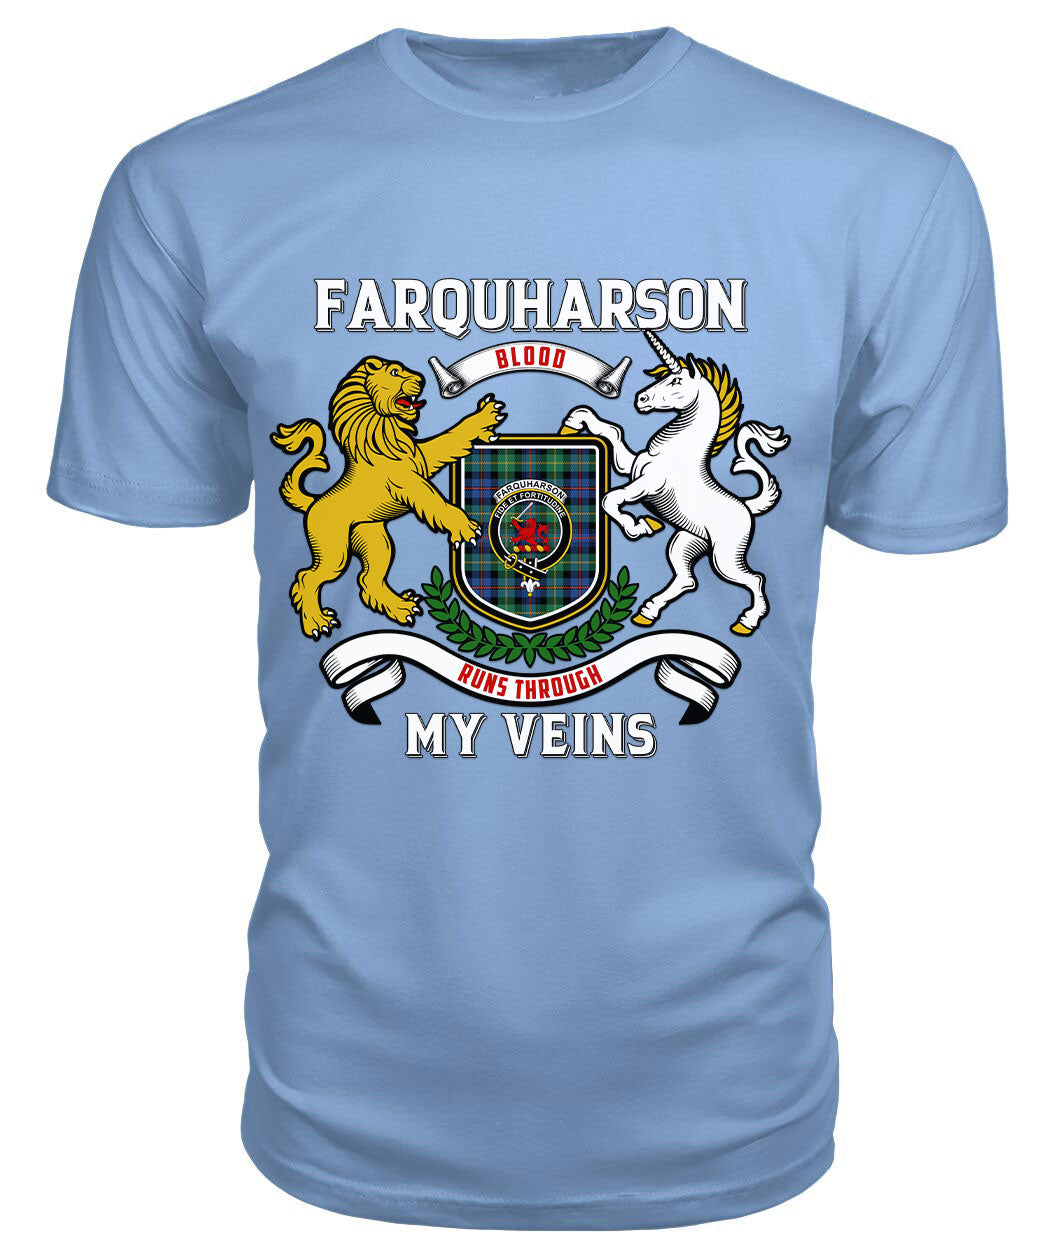 Farquharson Ancient Tartan Crest 2D T-shirt - Blood Runs Through My Veins Style